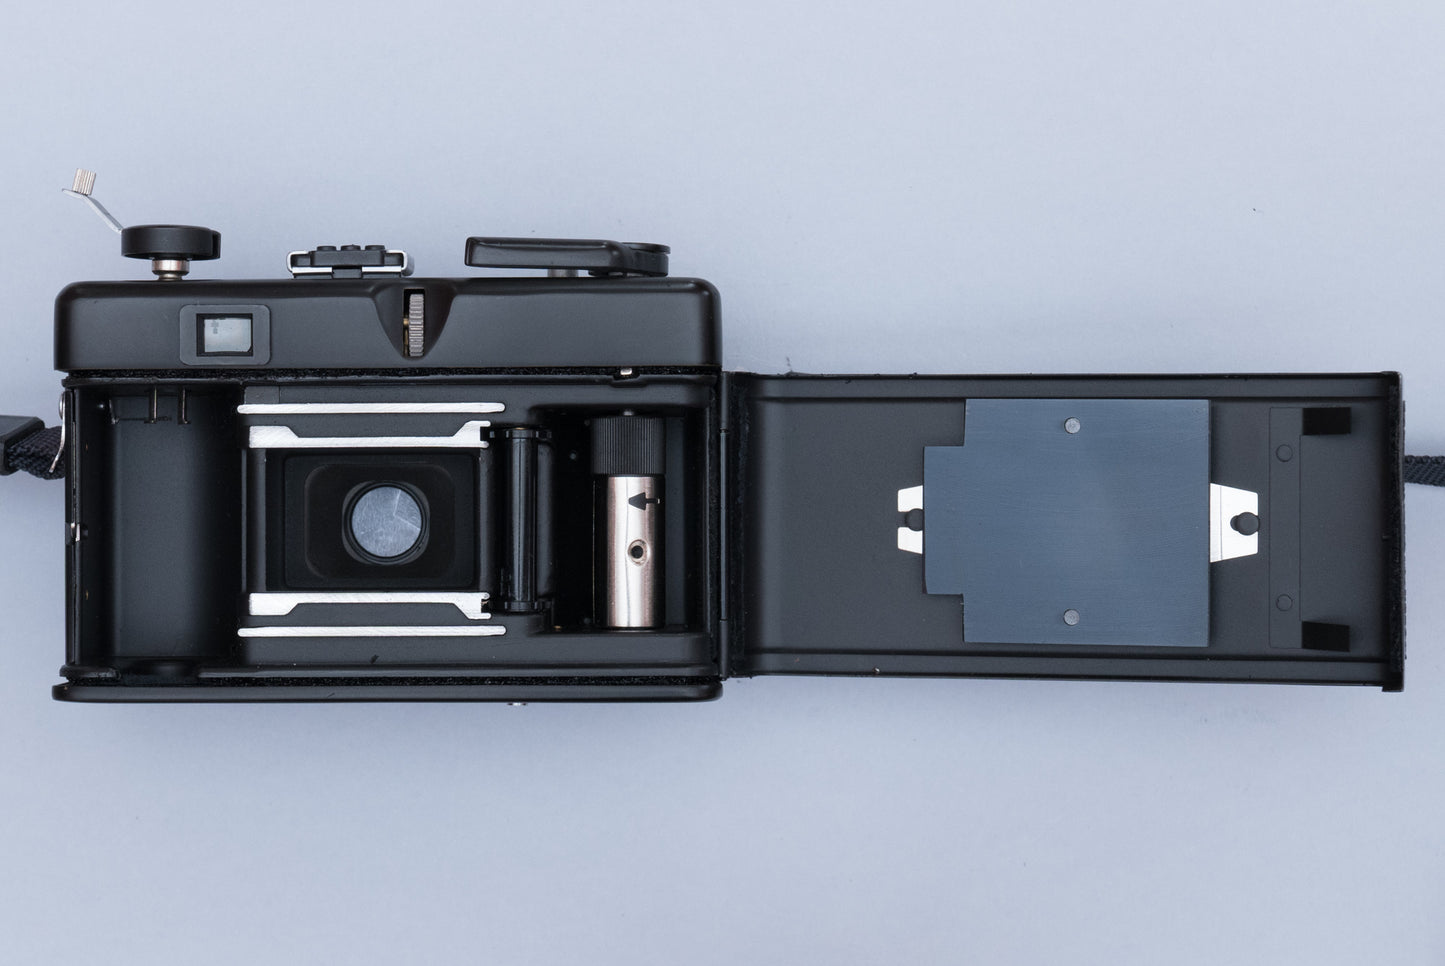 FED 50 Automat Vintage 35mm Film Camera